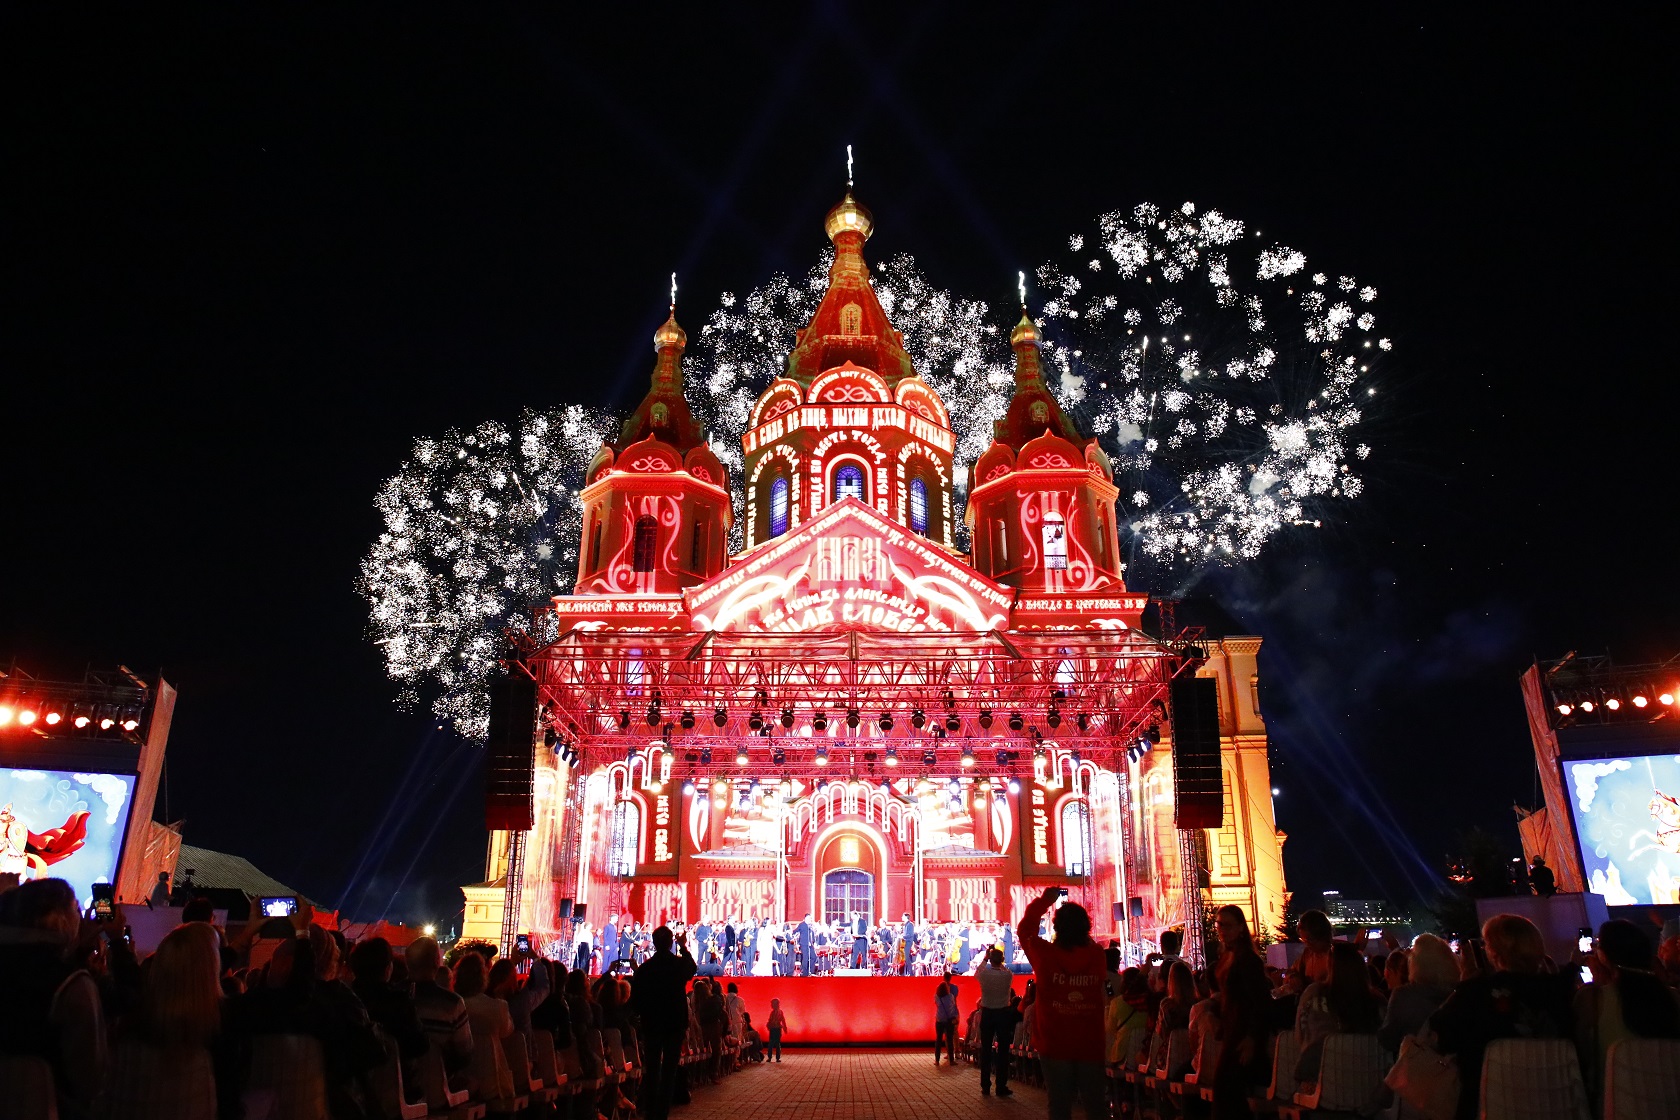 Музыкальный фестиваль «Великая Русь» состоится 12 августа у собора Александра Невского в Нижнем Новгороде